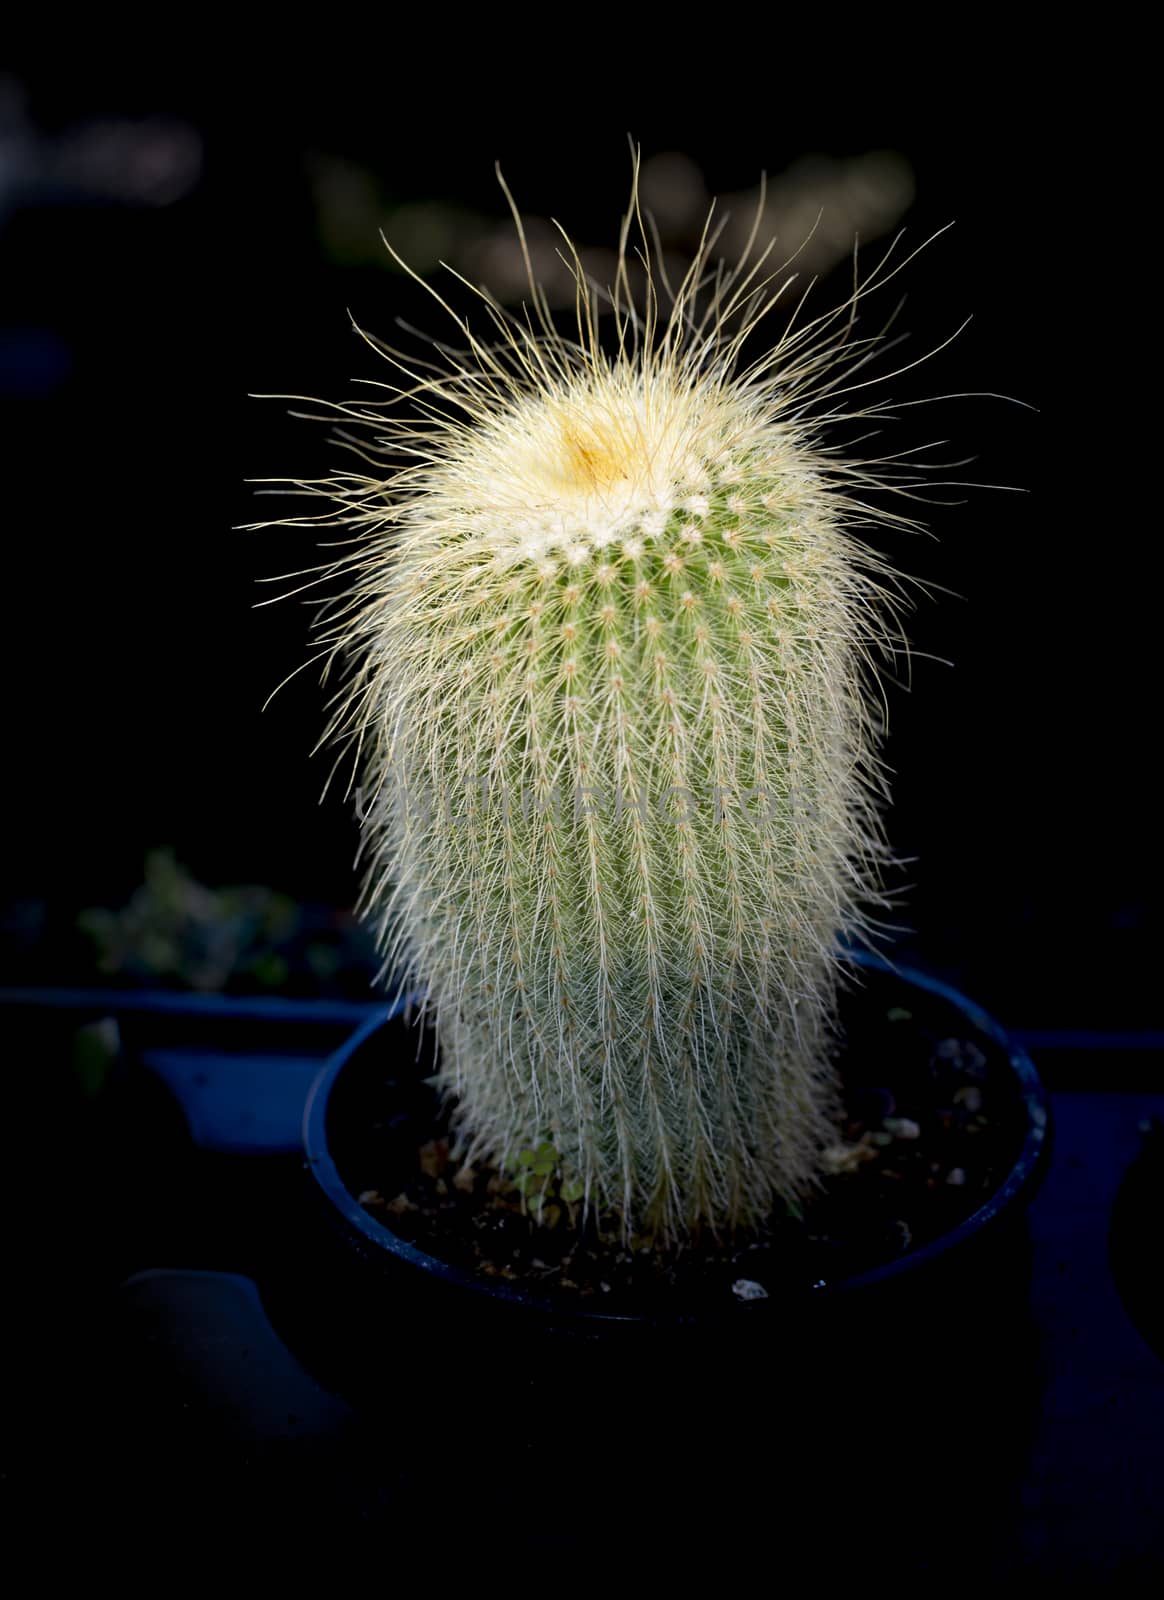 Cactus in light and dark pot.